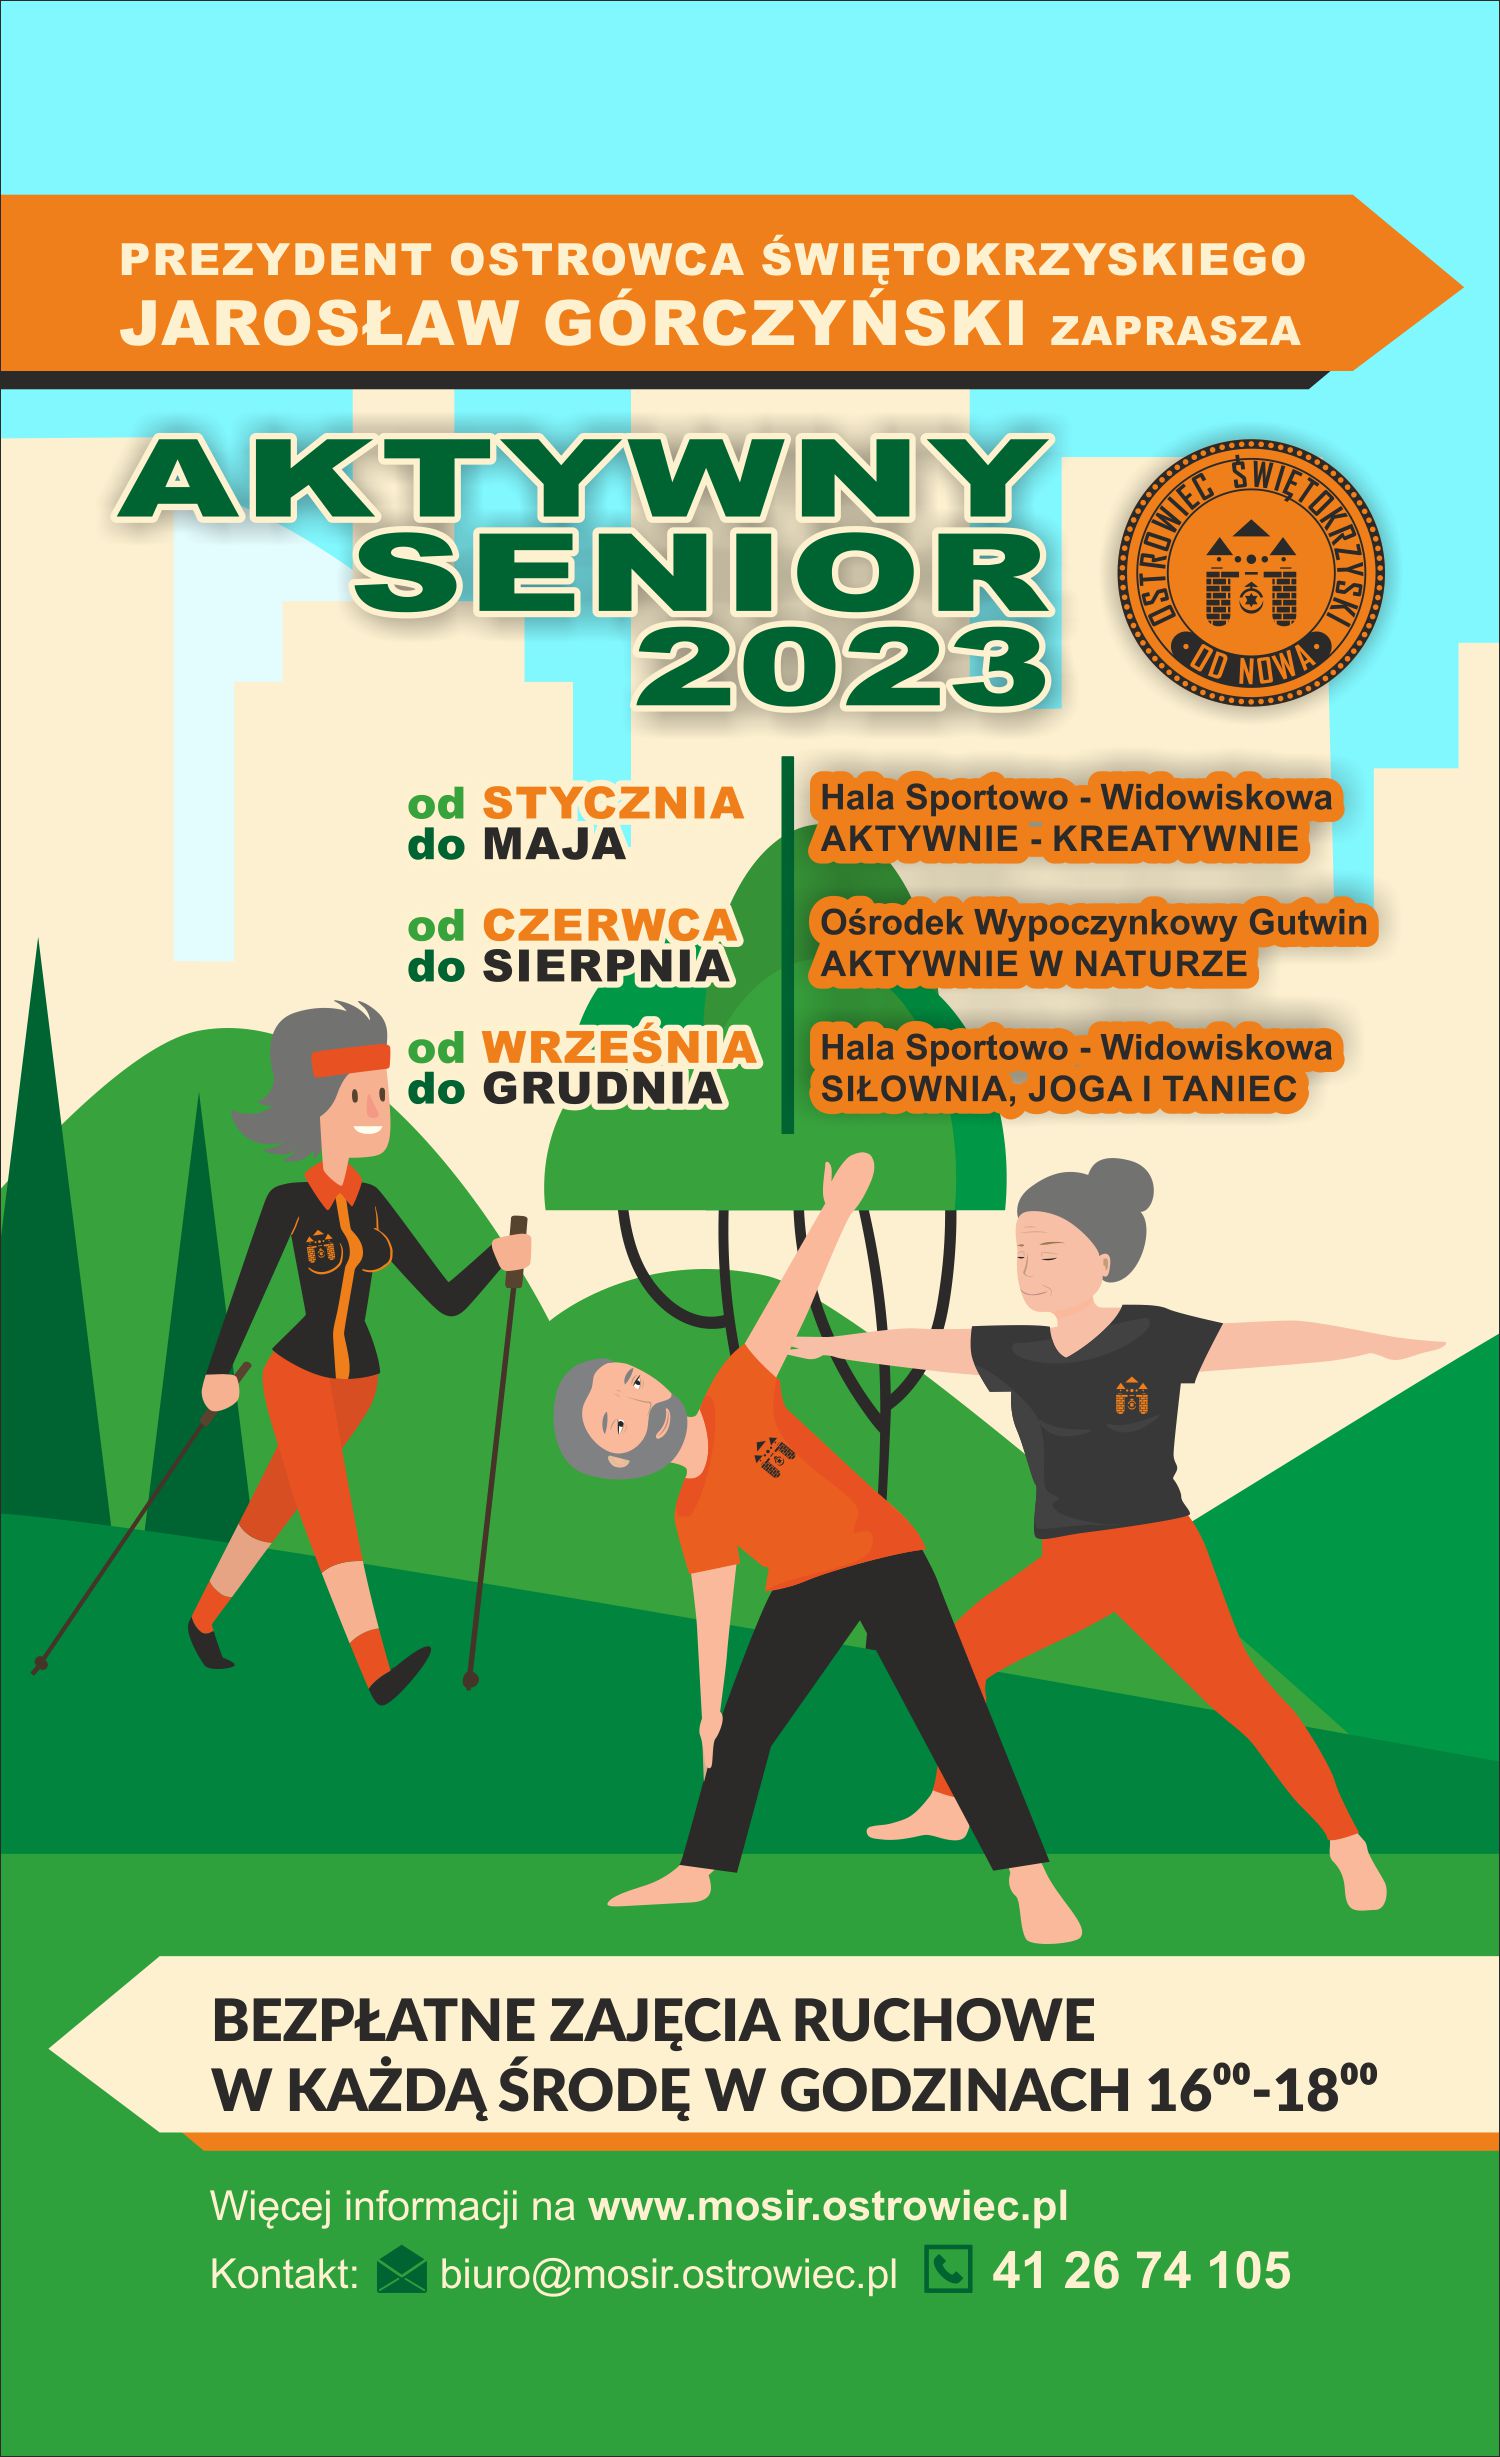 Plakat promujący akcję Aktywny Senior 2023